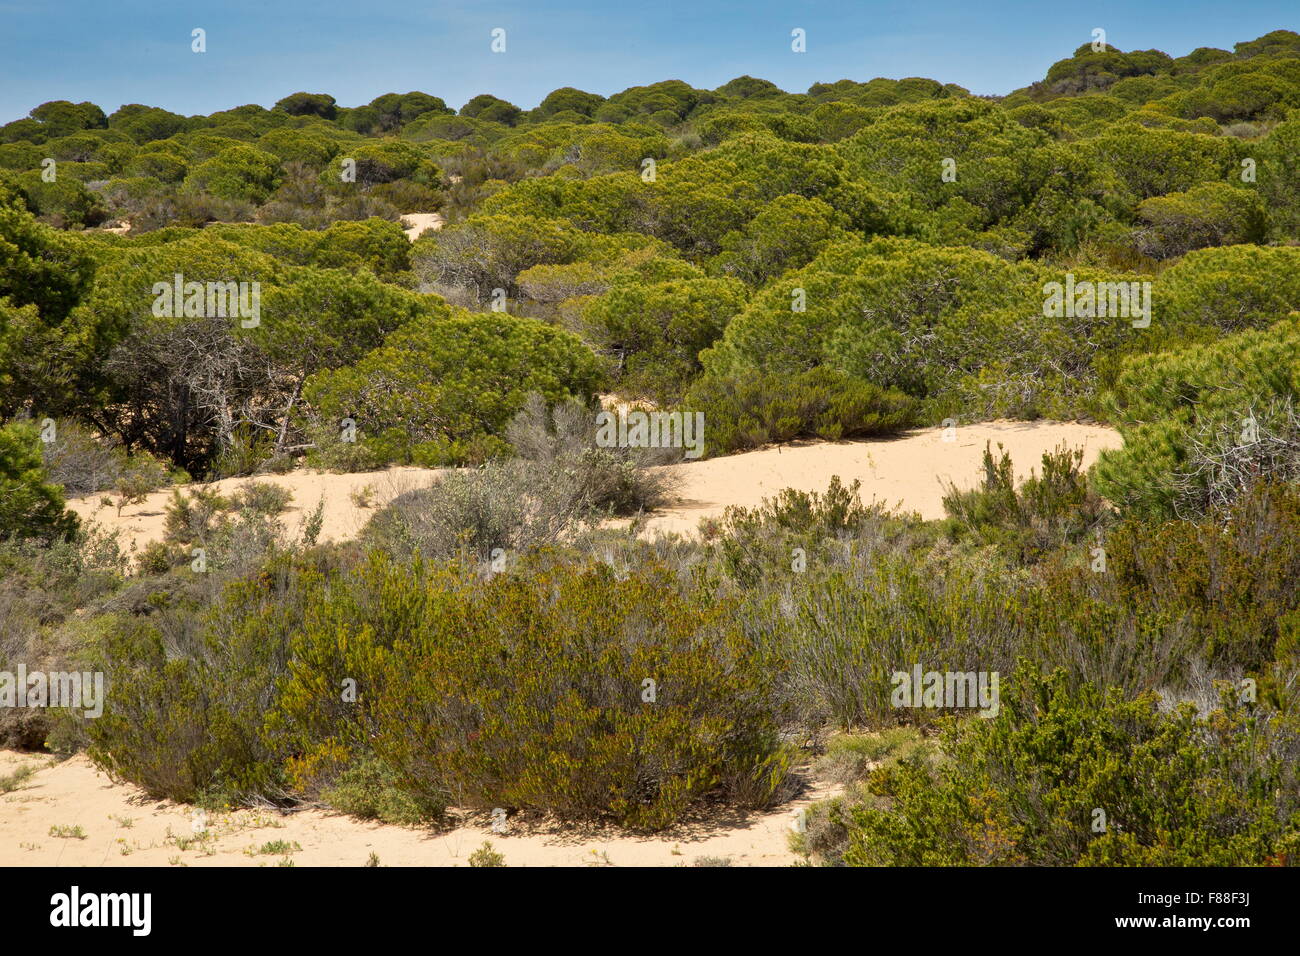 Dunes de sable végétalisées avec parapluie, forêt de pins, à la Cuesta de Donana, Maneli, Espagne. Banque D'Images